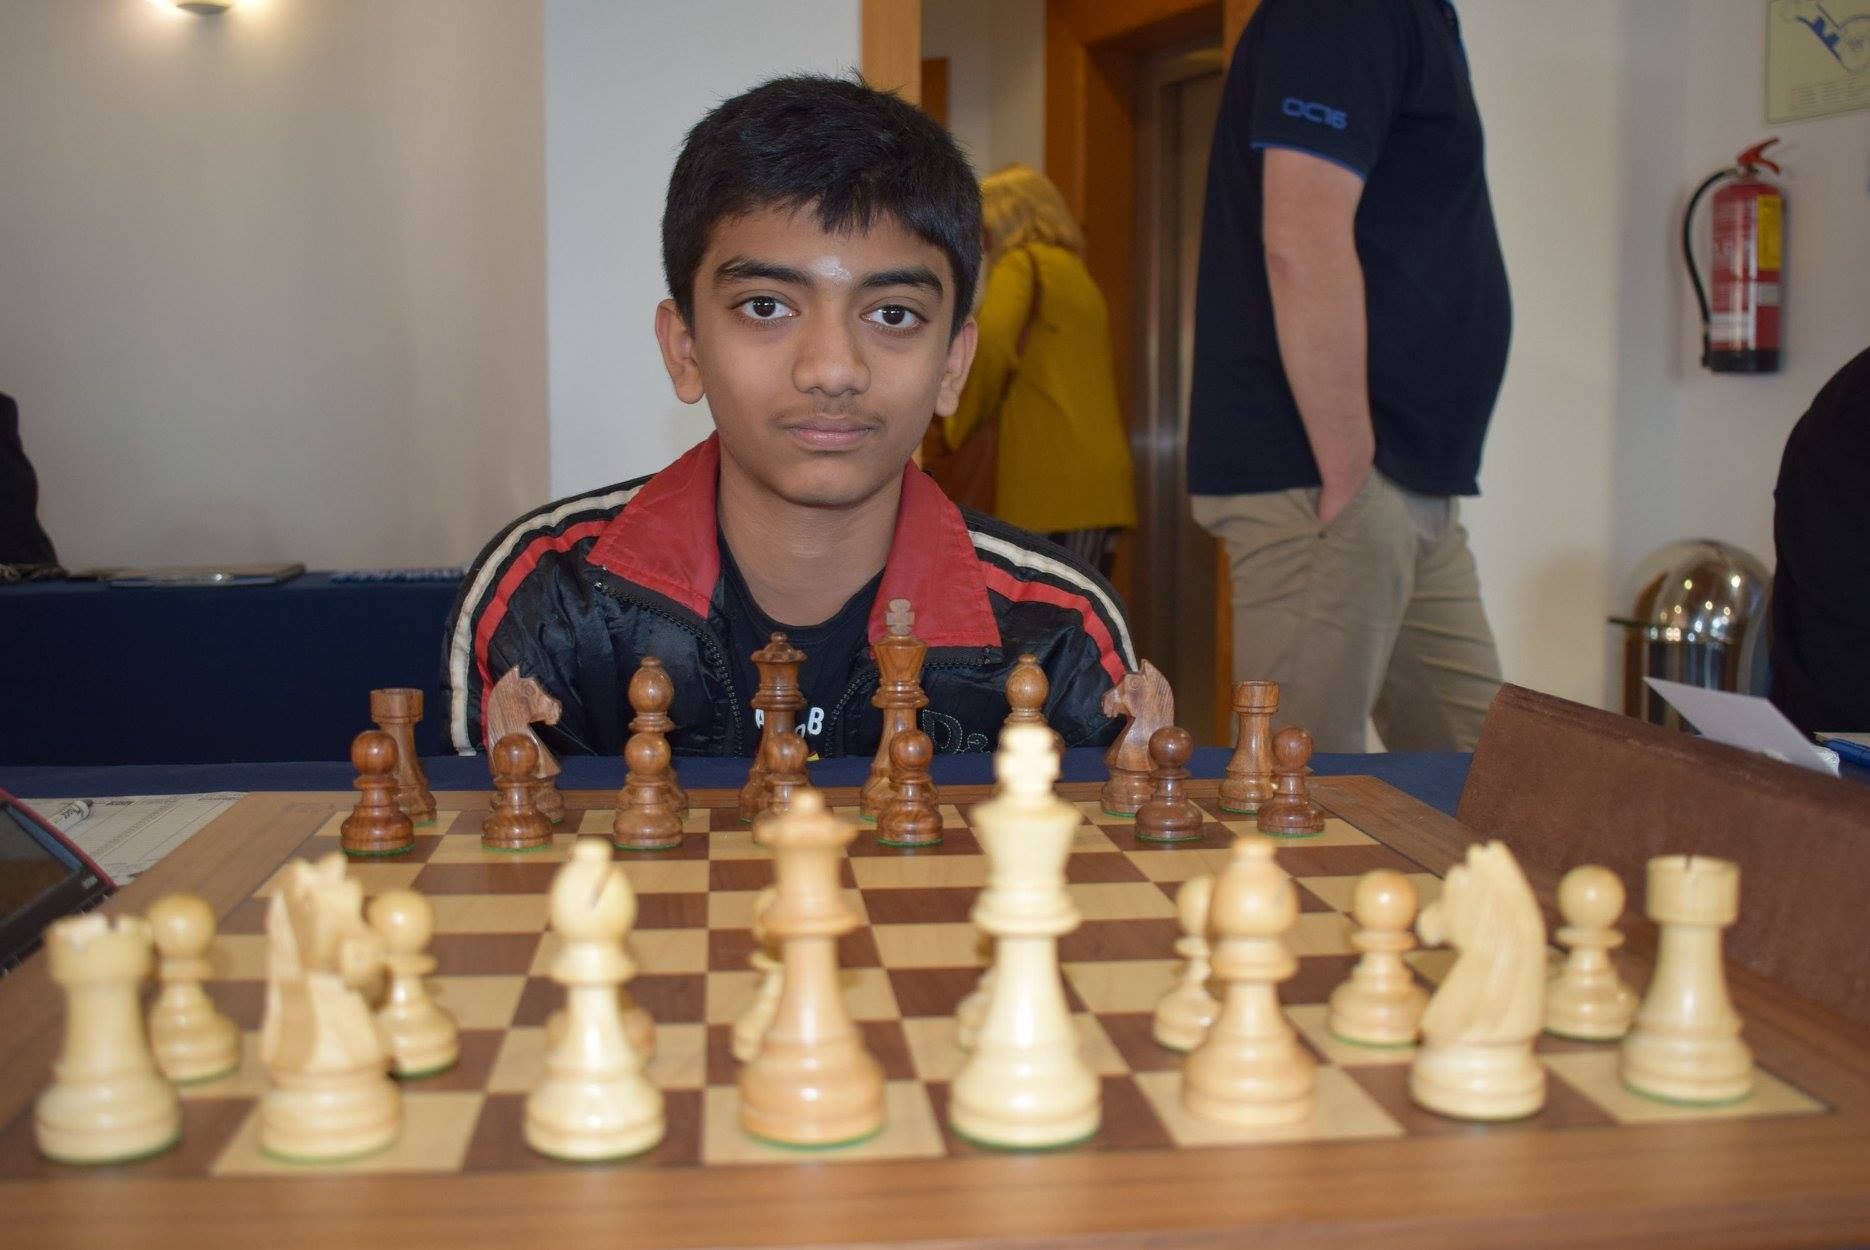 तमिलनाडु के डी गुकेश ने शतरंज में किया देश का नाम रोशन, बने दुनिया के दूसरे और भारत के सबसे युवा ग्रैंड मास्टर